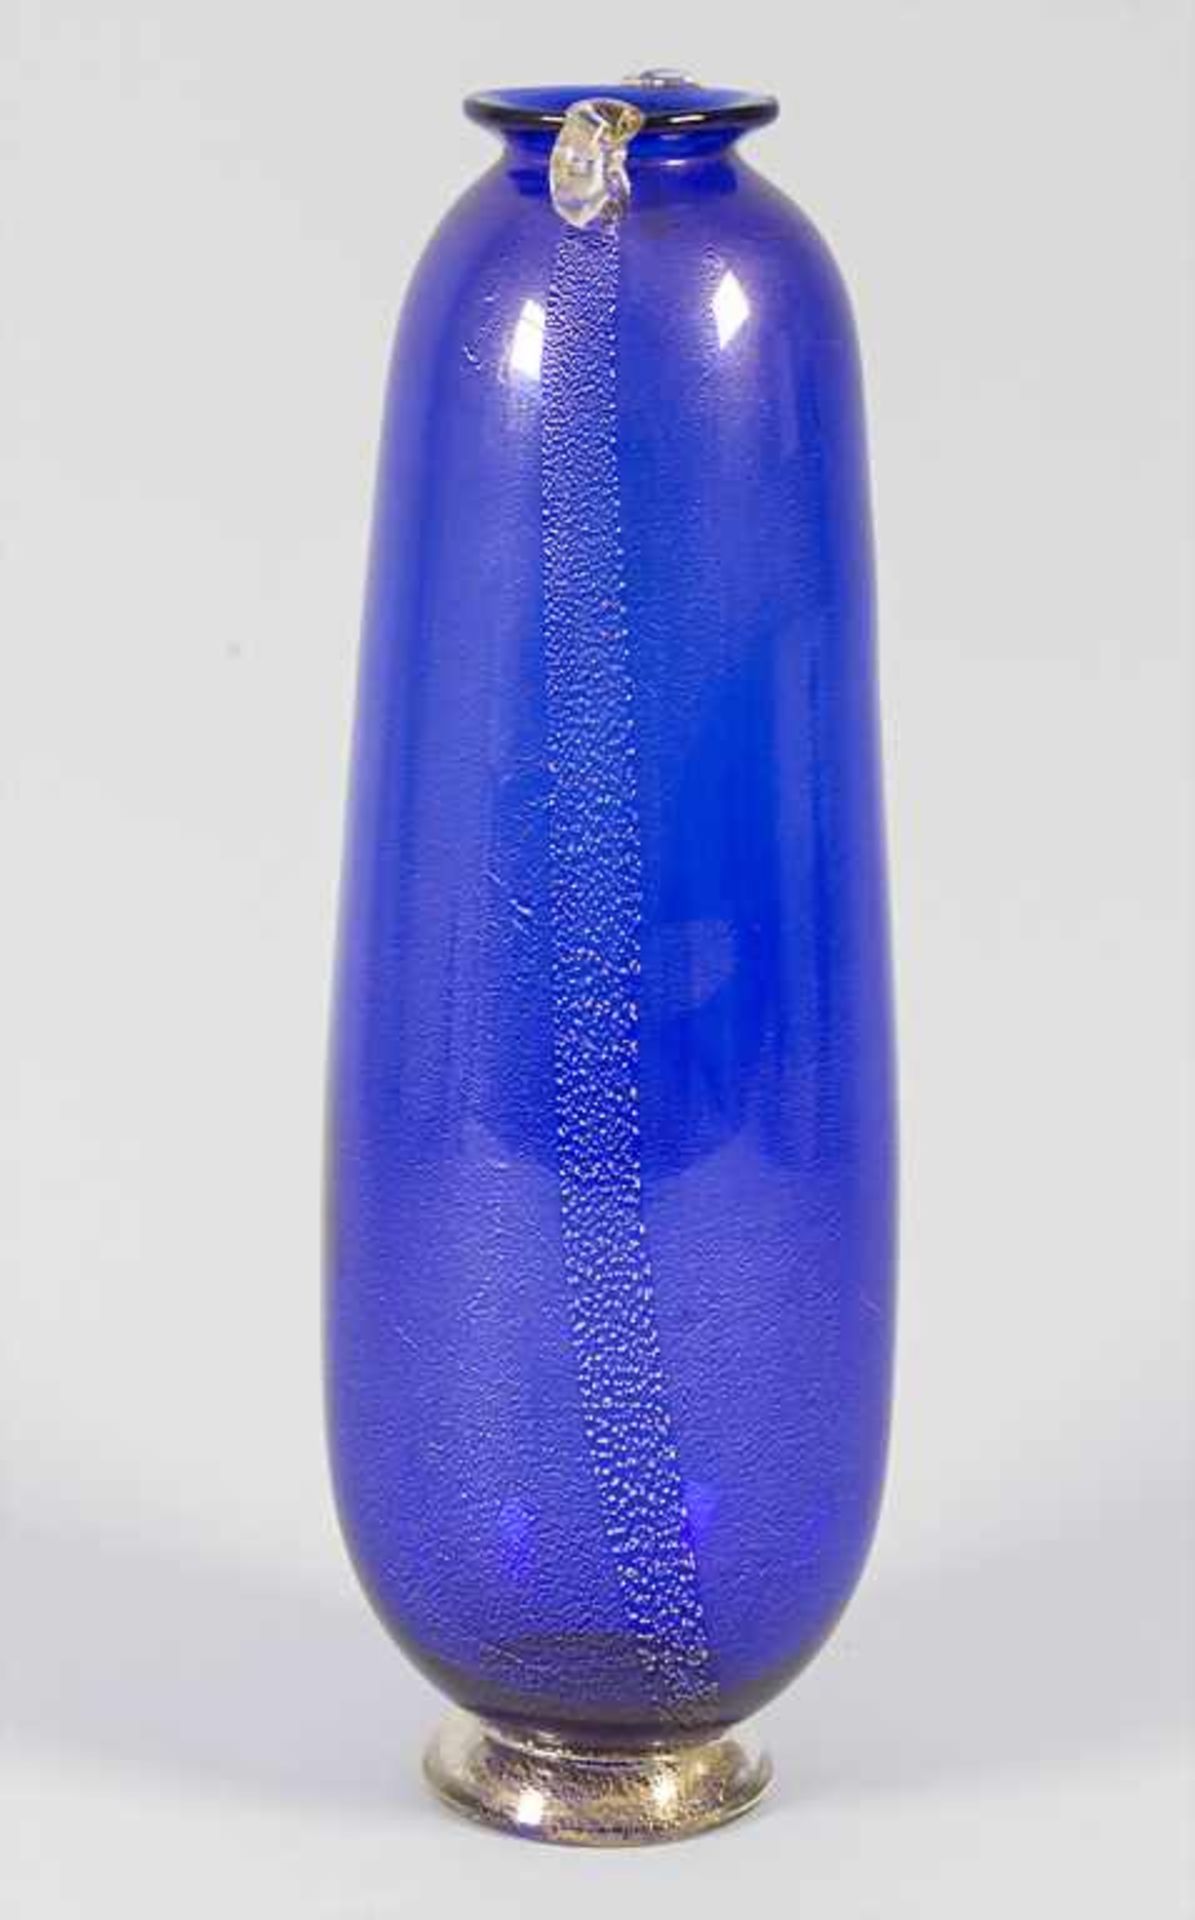 Glasziervase / A decorative glass vase, wohl AVEM (Arte Vetraria Muranese), Murano, 40/50er Jahre, - Bild 2 aus 6